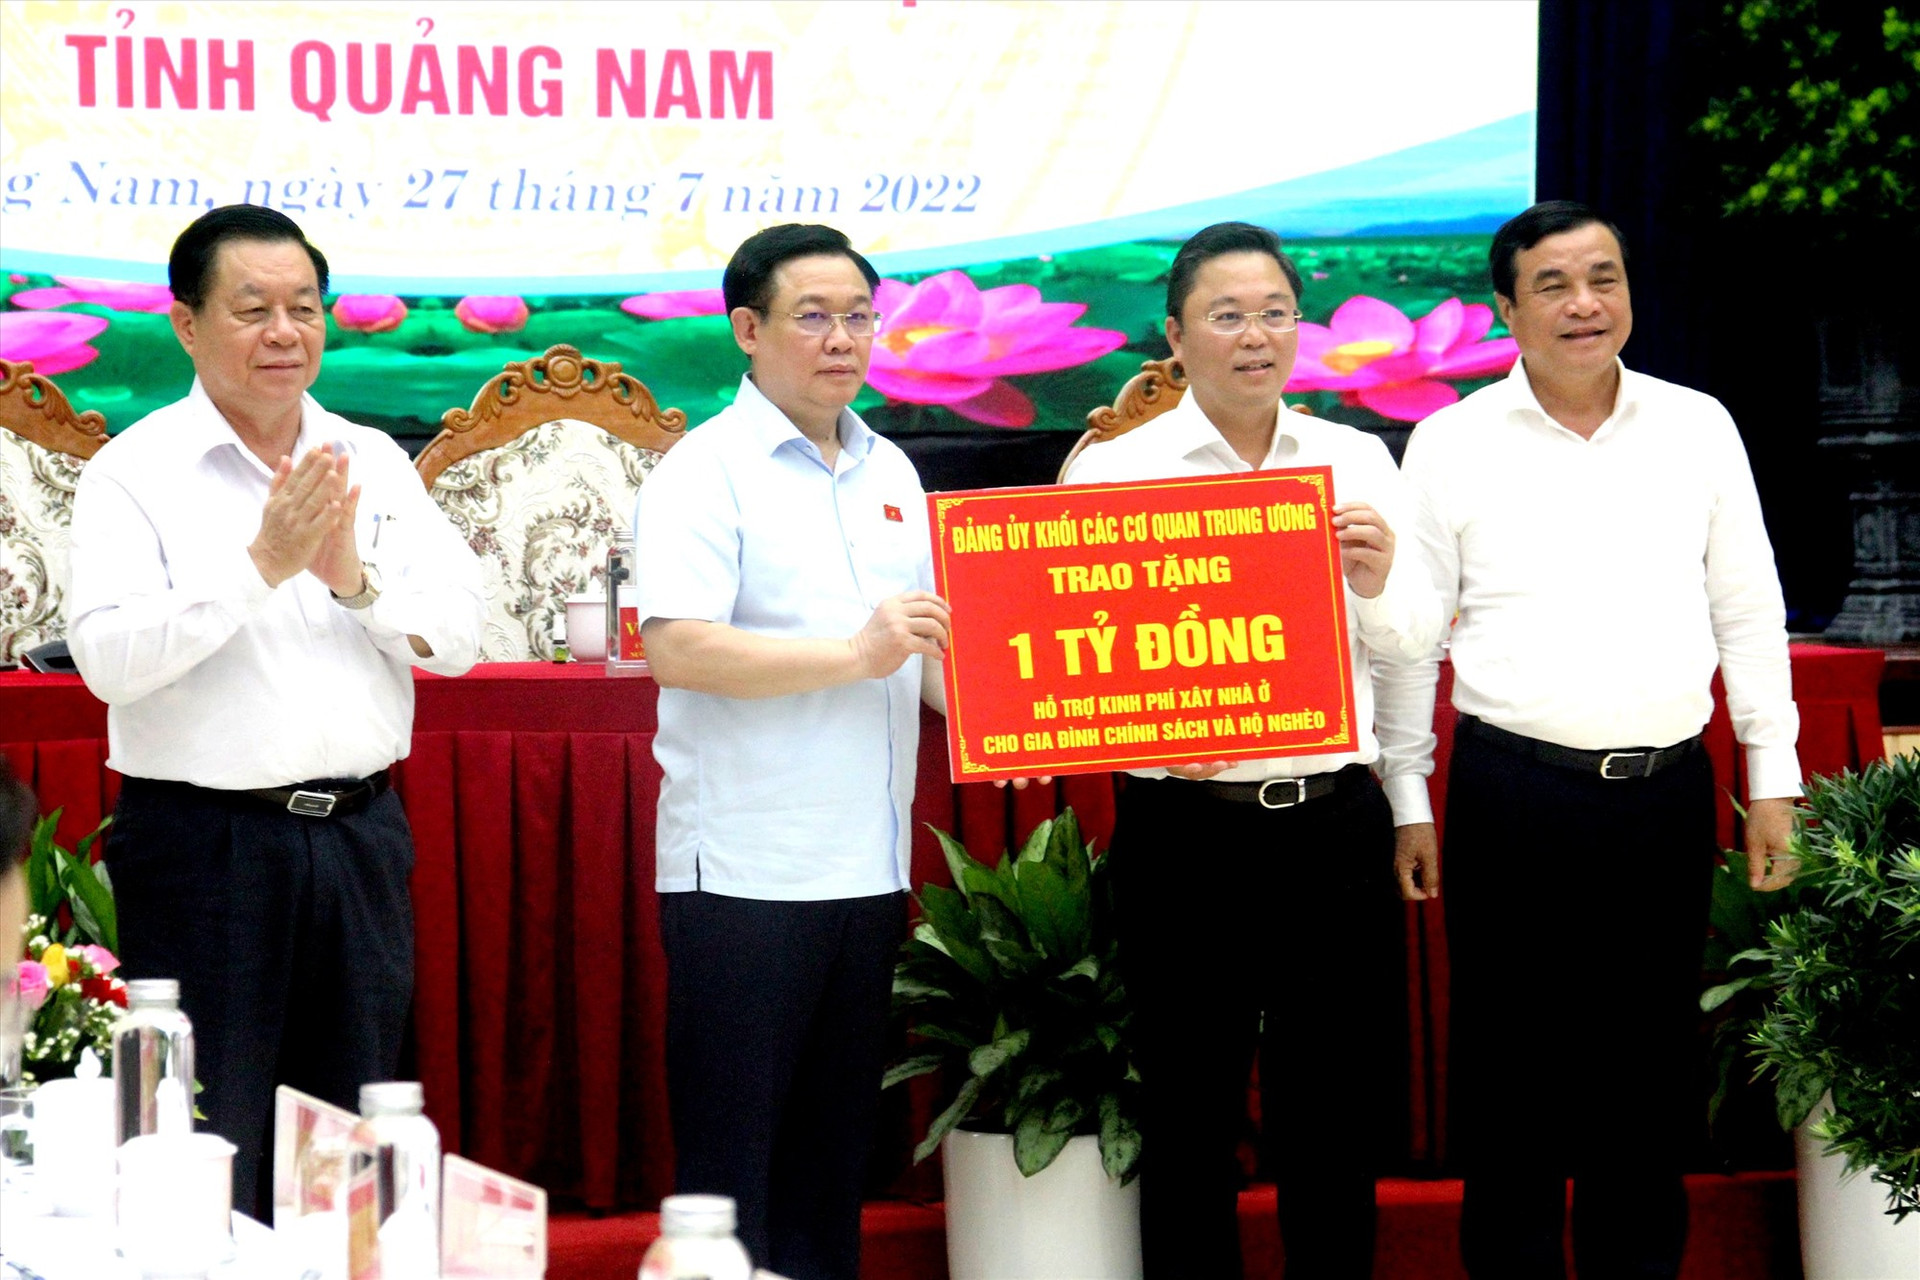 Chủ tịch Quốc hội Vương Đình Huệ đã trao biển tượng trưng 1 tỷ đồng hỗ trợ kinh phí xây dựng nhà ở cho gia đình chính sách và hộ nghèo trên địa bàn tỉnh. Đây là quà tặng của Đảng ủy Khối các cơ quan Trung ương dành cho NCC tỉnh Quảng Nam.